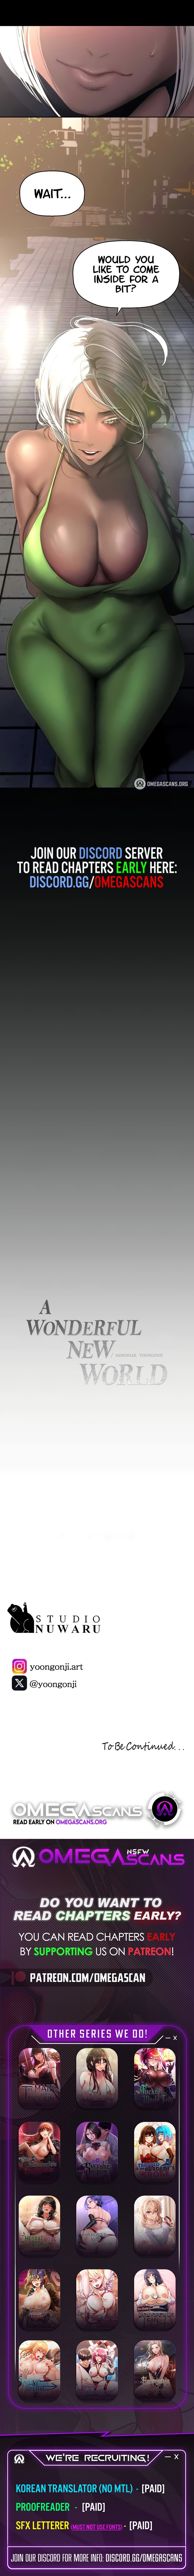 a-wonderful-new-world-chap-233-10